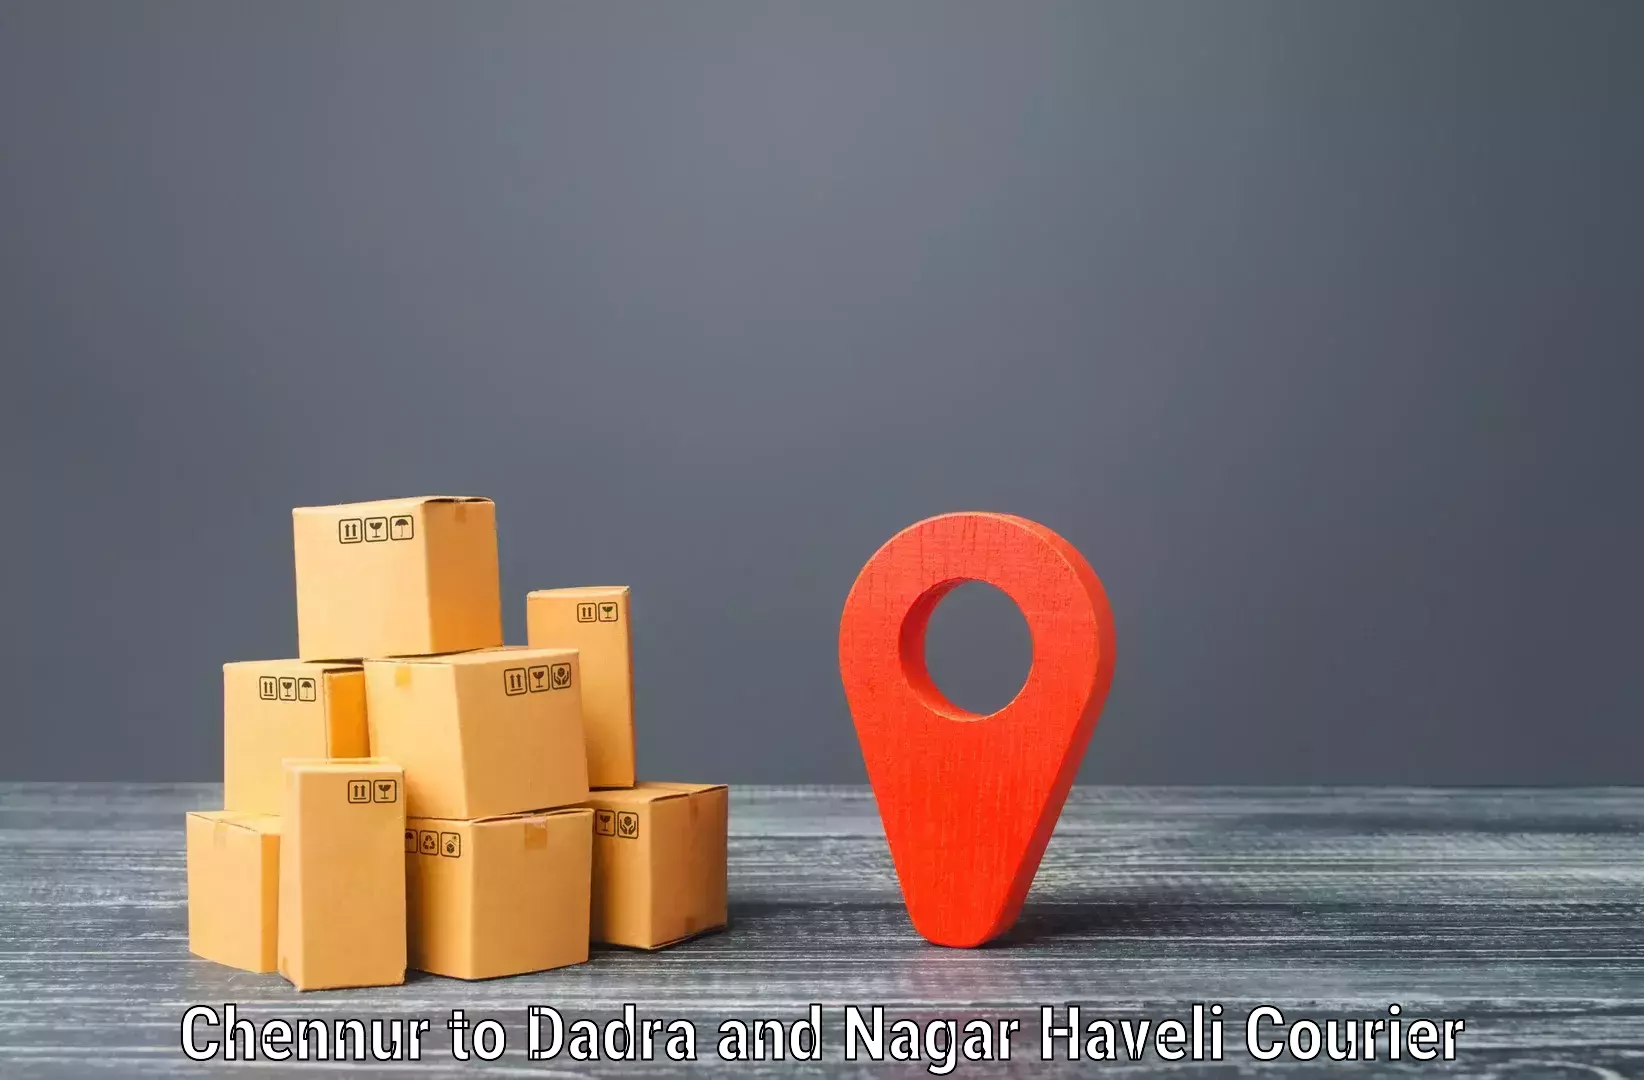 Cargo courier service Chennur to Dadra and Nagar Haveli